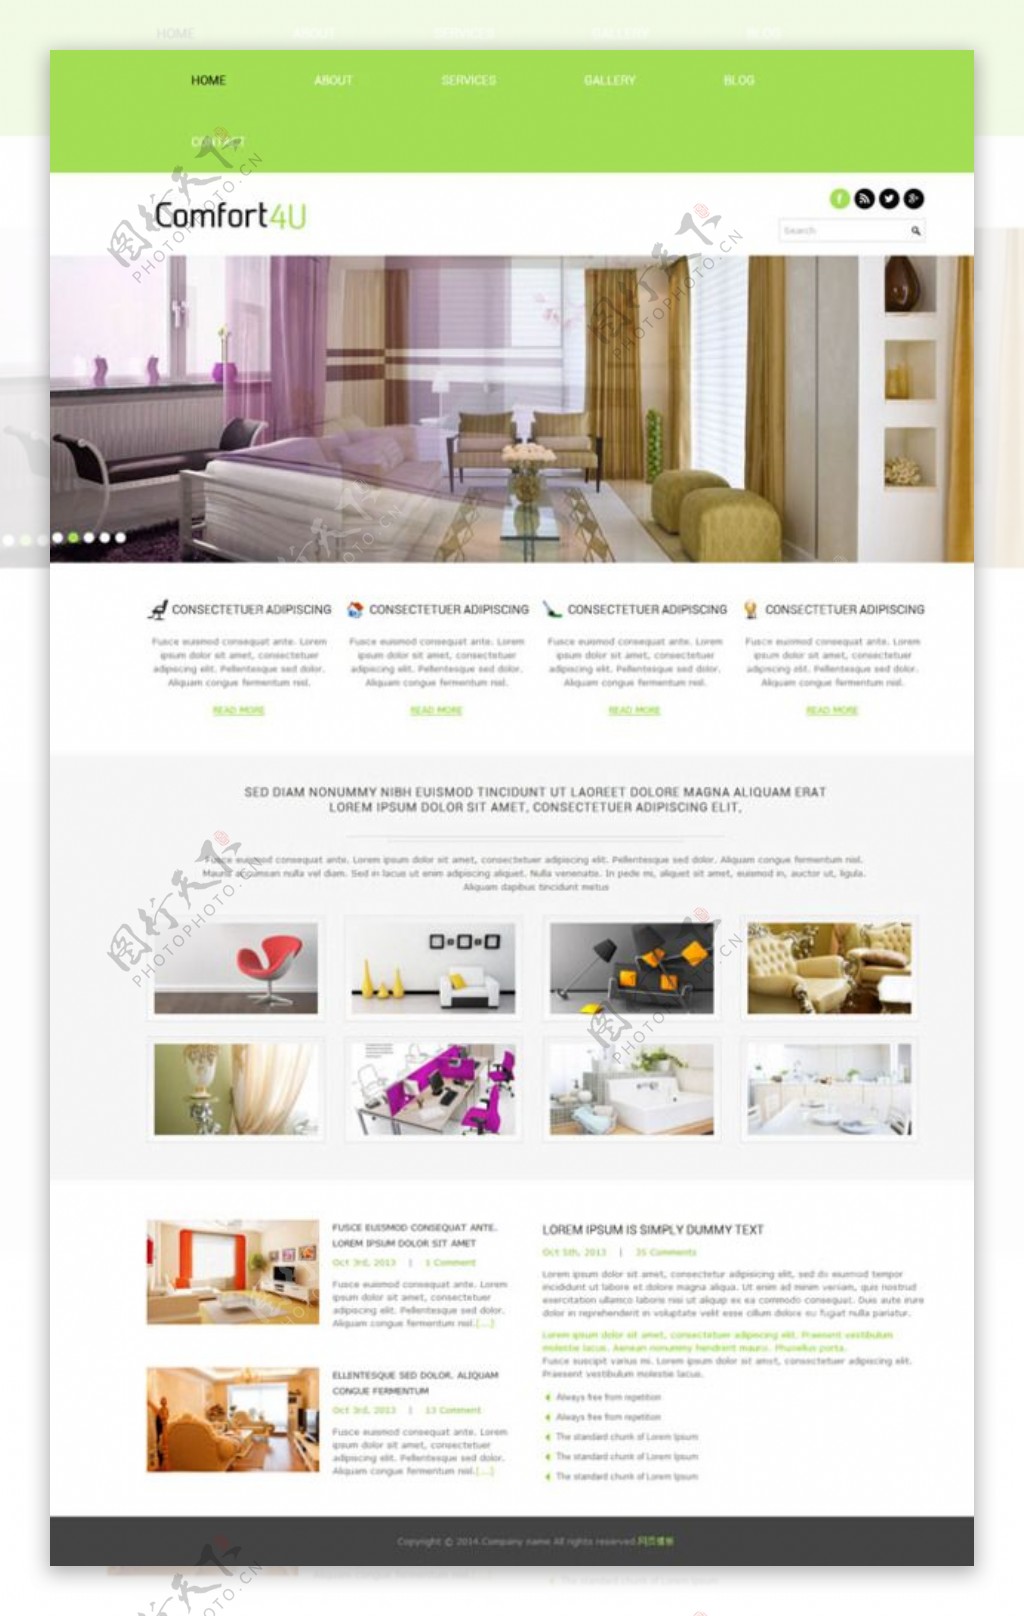 室内设计效果网页模板图片